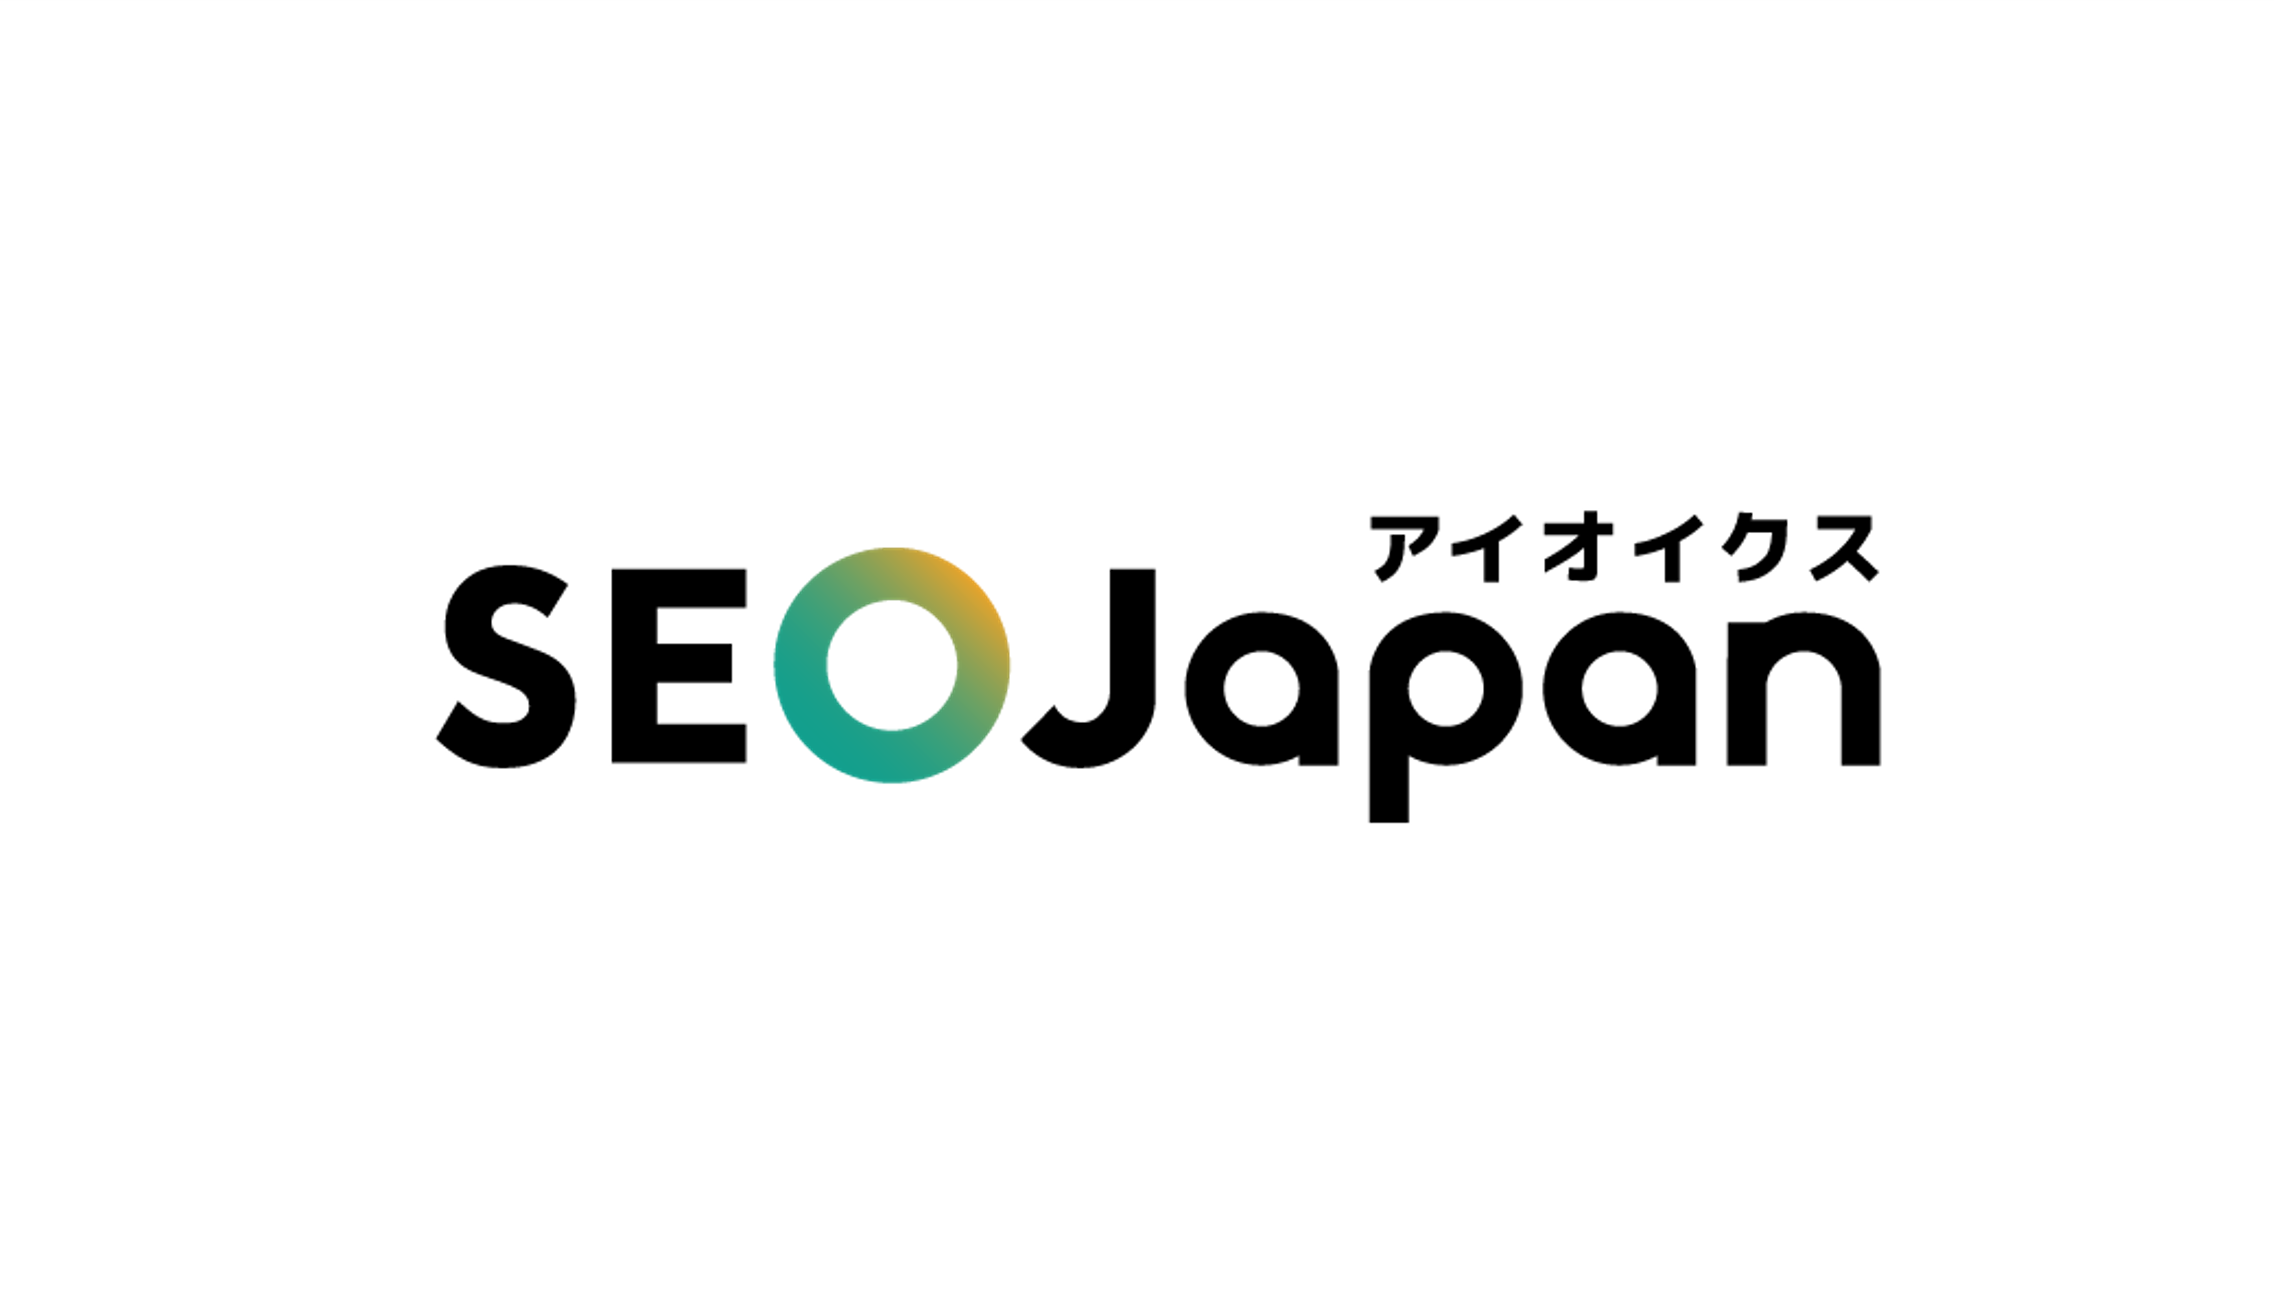 私たちは、日本でSEOという概念が普及する前から、15年以上にも渡ってSEOサービスを提供してきました。オウンドメディアであるSEO Japanは2002年、日本初のSEO情報サイトとして誕生。当時日本に皆無だったSEOの関連情報を提供しました。日本でSEOを普及させるべく、世界最大の検索エンジンイベント「Search Engine Strategies」で講演、モデレータ、また各種執筆活動（日経インターネット、インターネットマガジン等）を数多く行ってきました。